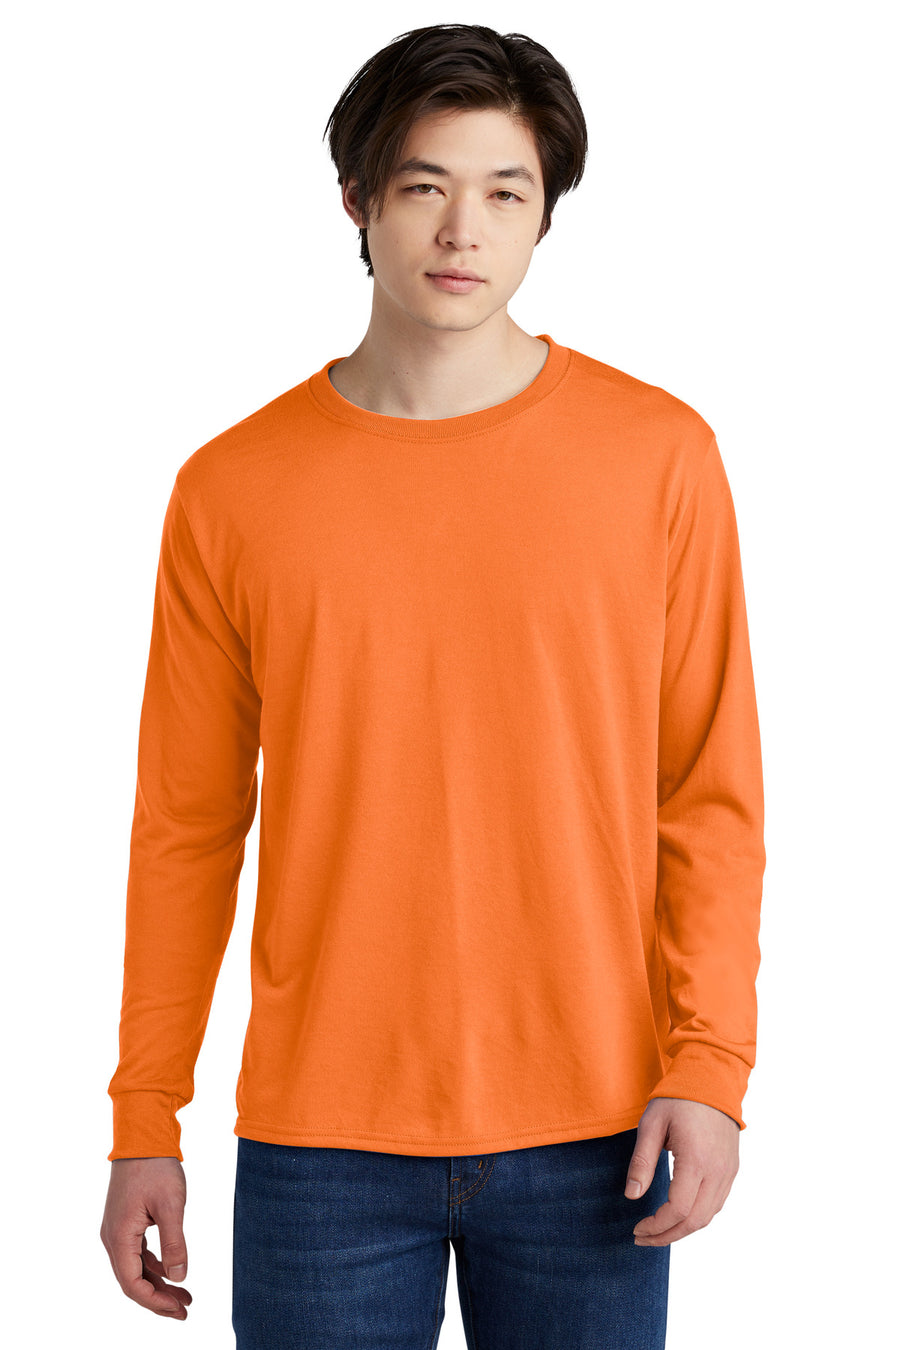 21LS-Safety Orange-front_model